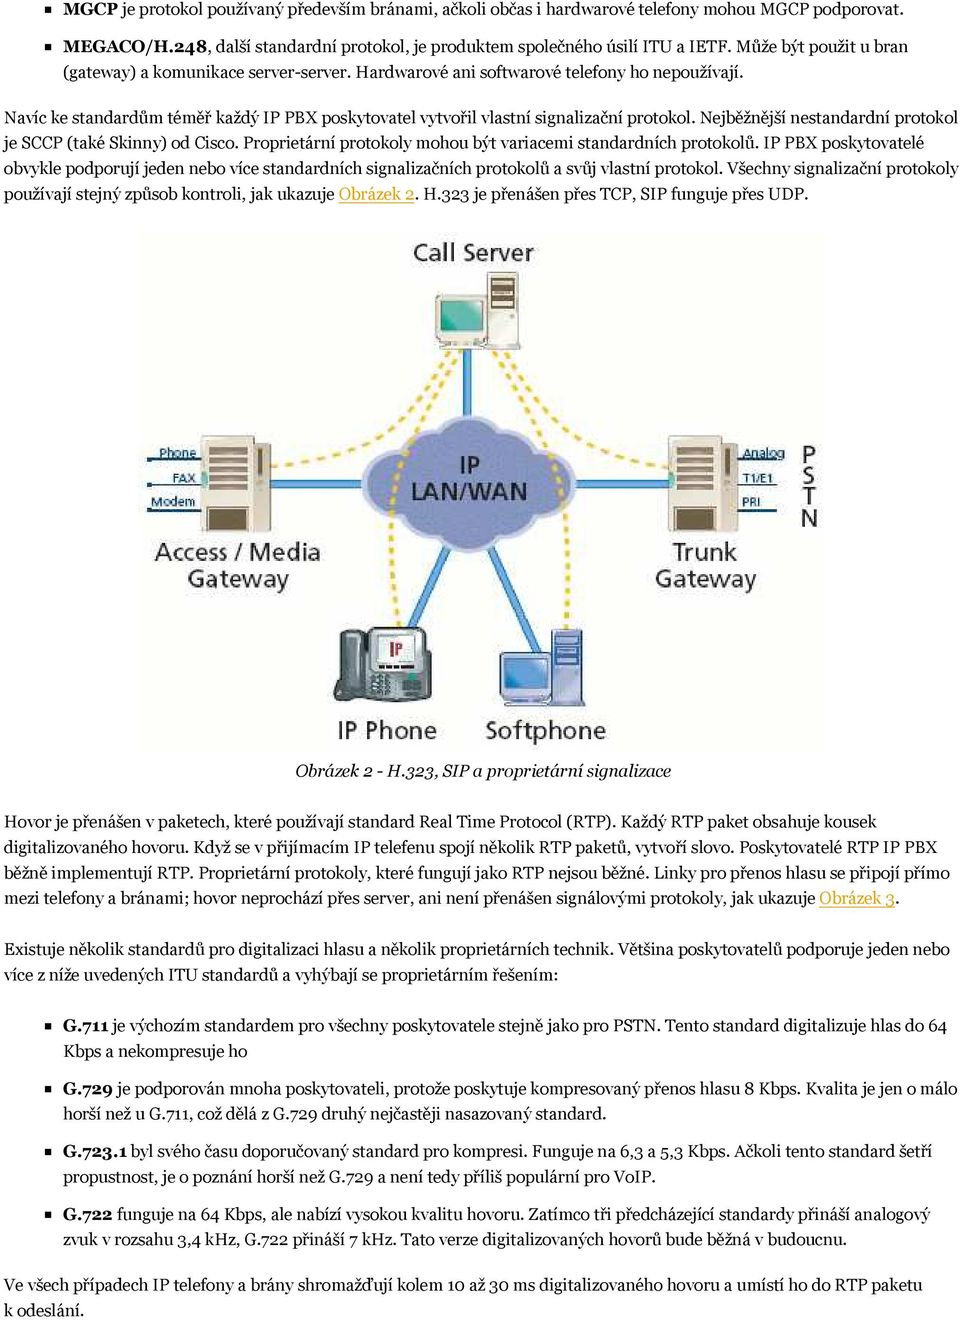 Navíc ke standardům téměř každý IP PBX poskytovatel vytvořil vlastní signalizační protokol. Nejběžnější nestandardní protokol je SCCP (také Skinny) od Cisco.